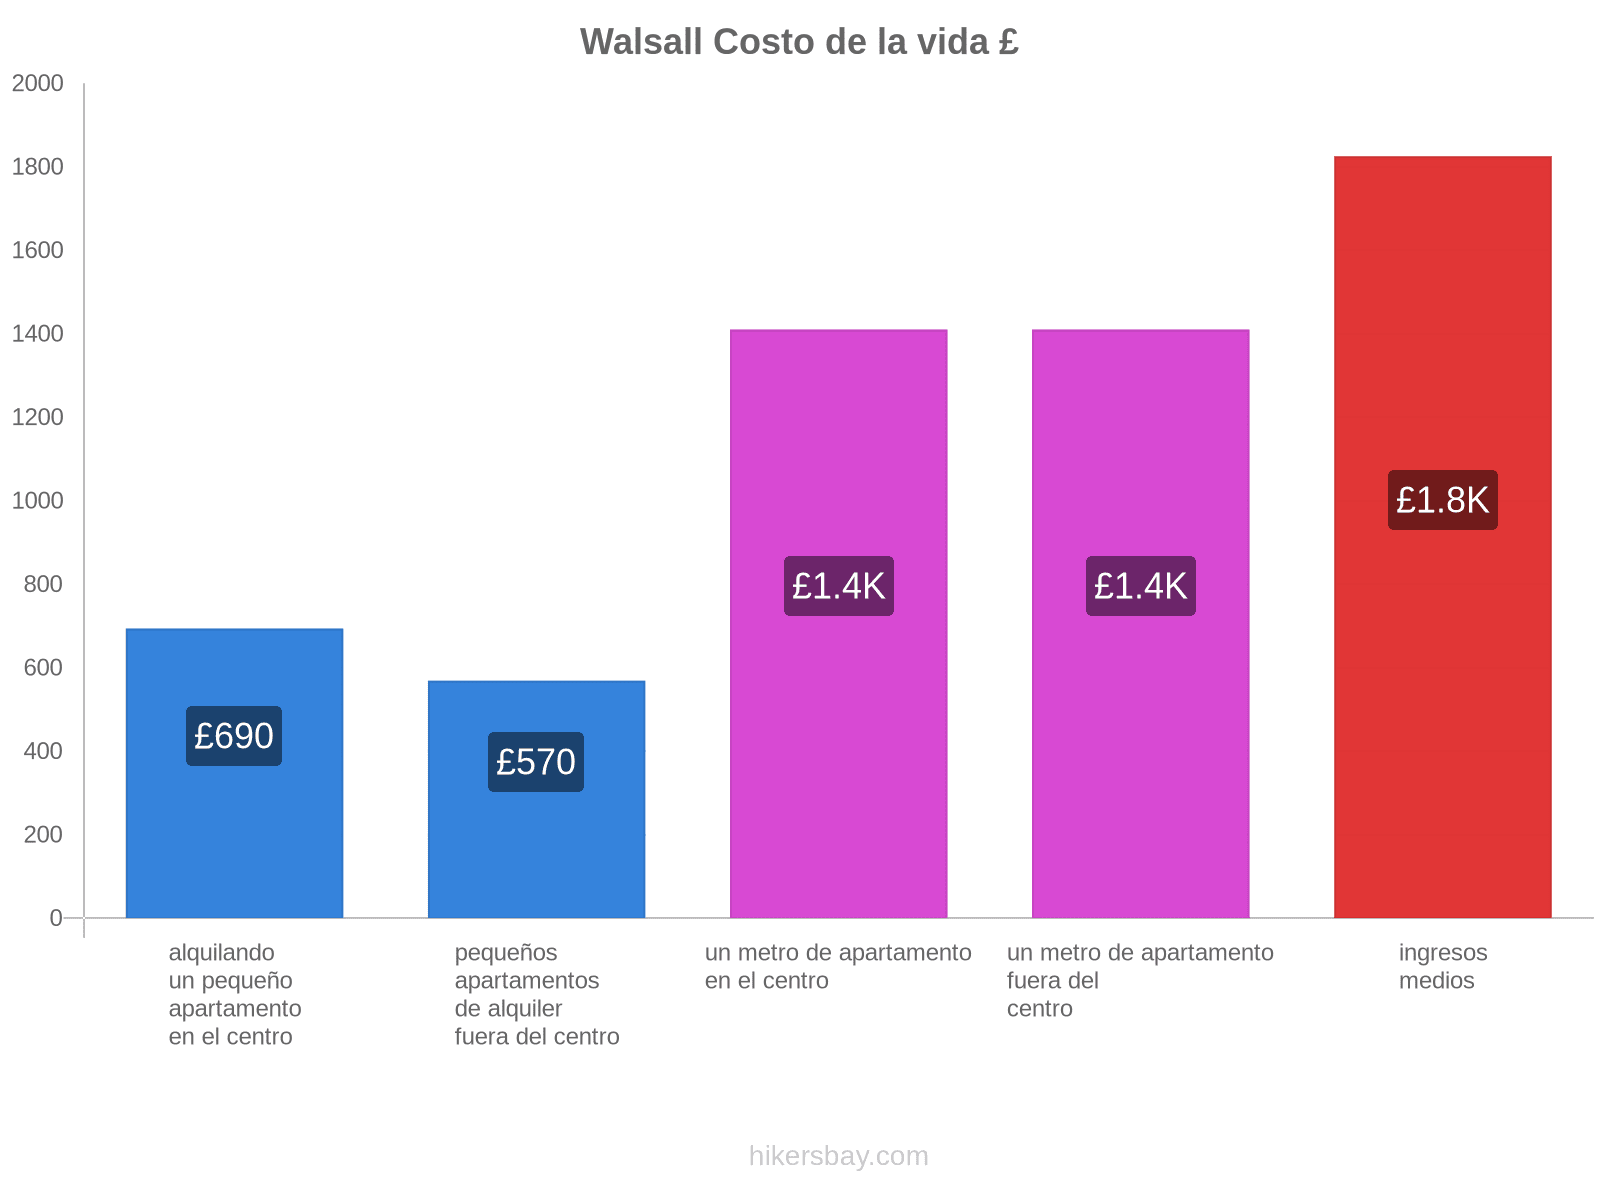 Walsall costo de la vida hikersbay.com